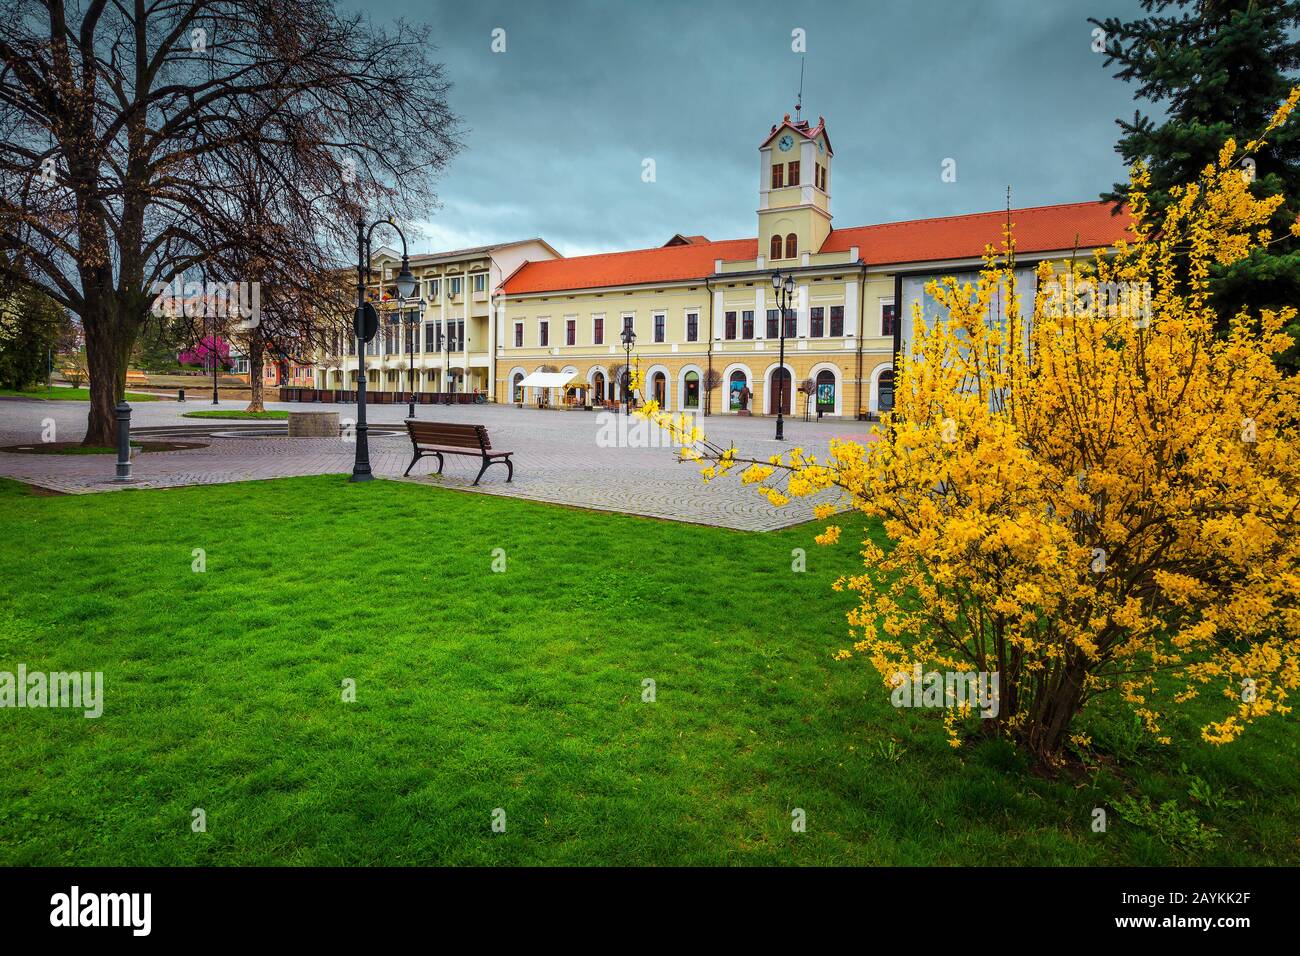 Fantastique printemps saisonnier décoration de rue spécifique avec des labournums jaunes dans le parc de la ville. Endroit pavé avec tour d'horloge dans le centre-ville, Sfantu G Banque D'Images